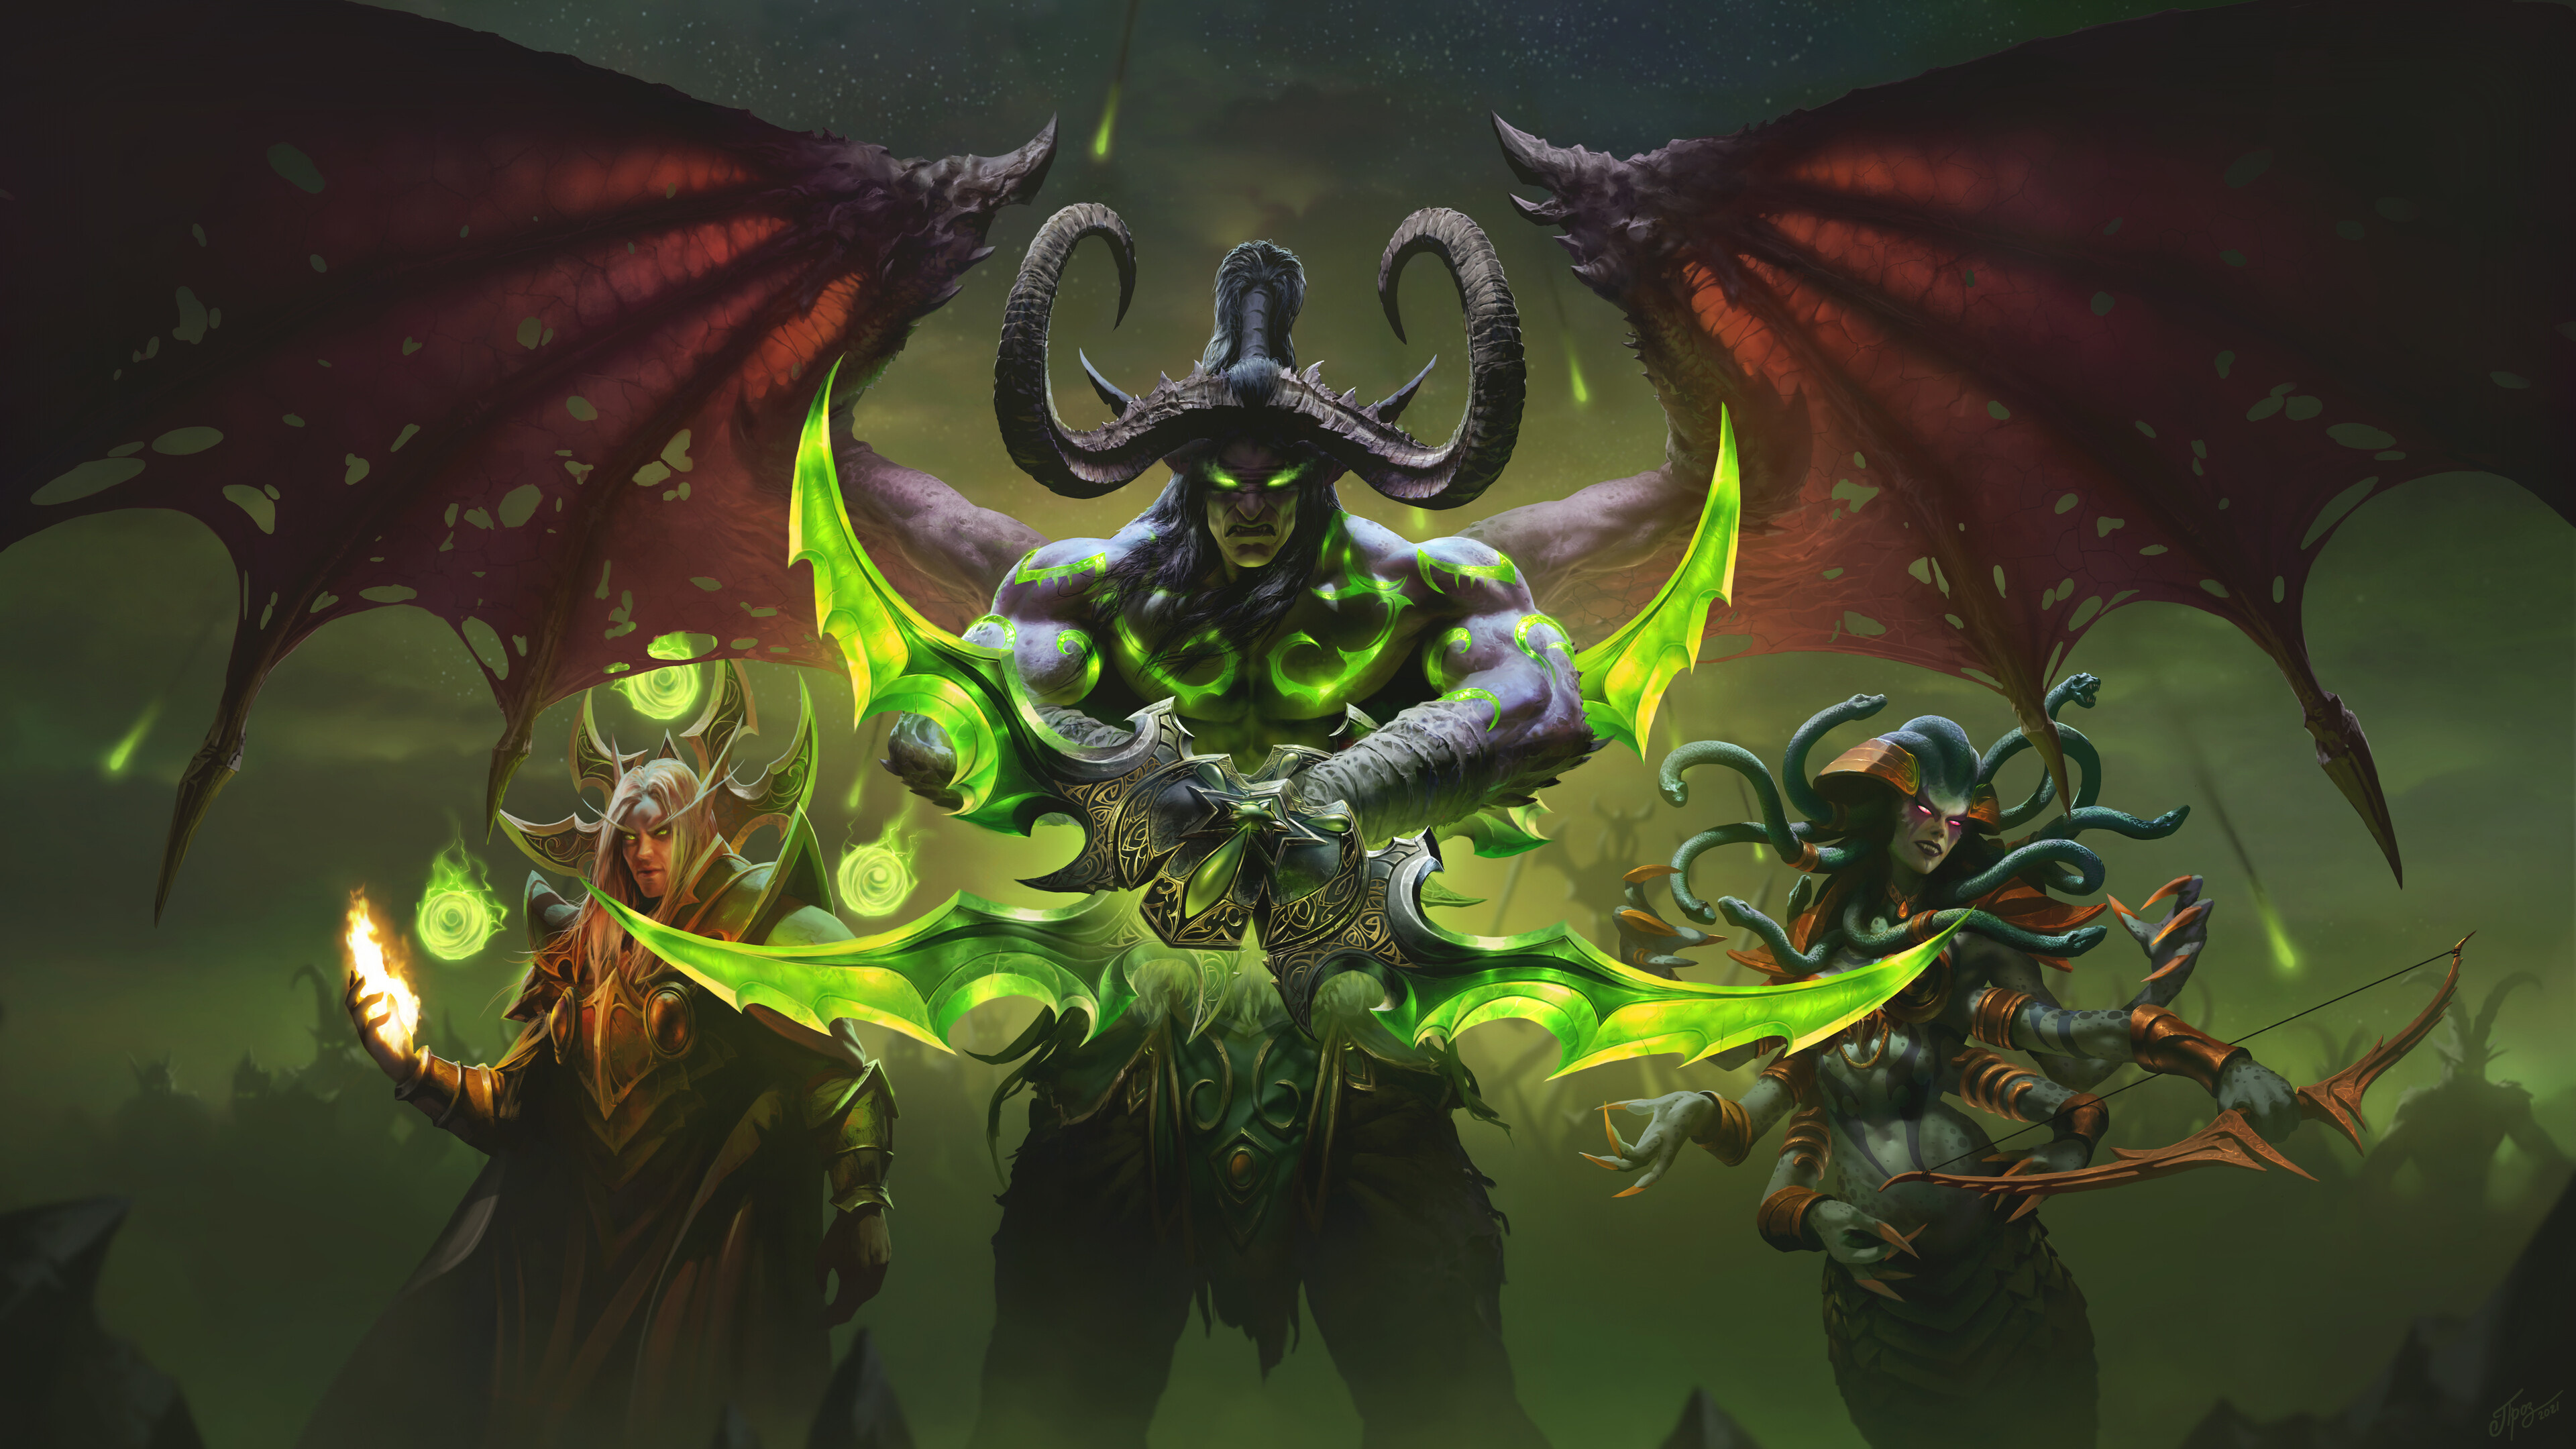 WoW Illidan, Demon's gaze, Black wings, Warcraft art, Terror reign, 3840x2160 4K Desktop